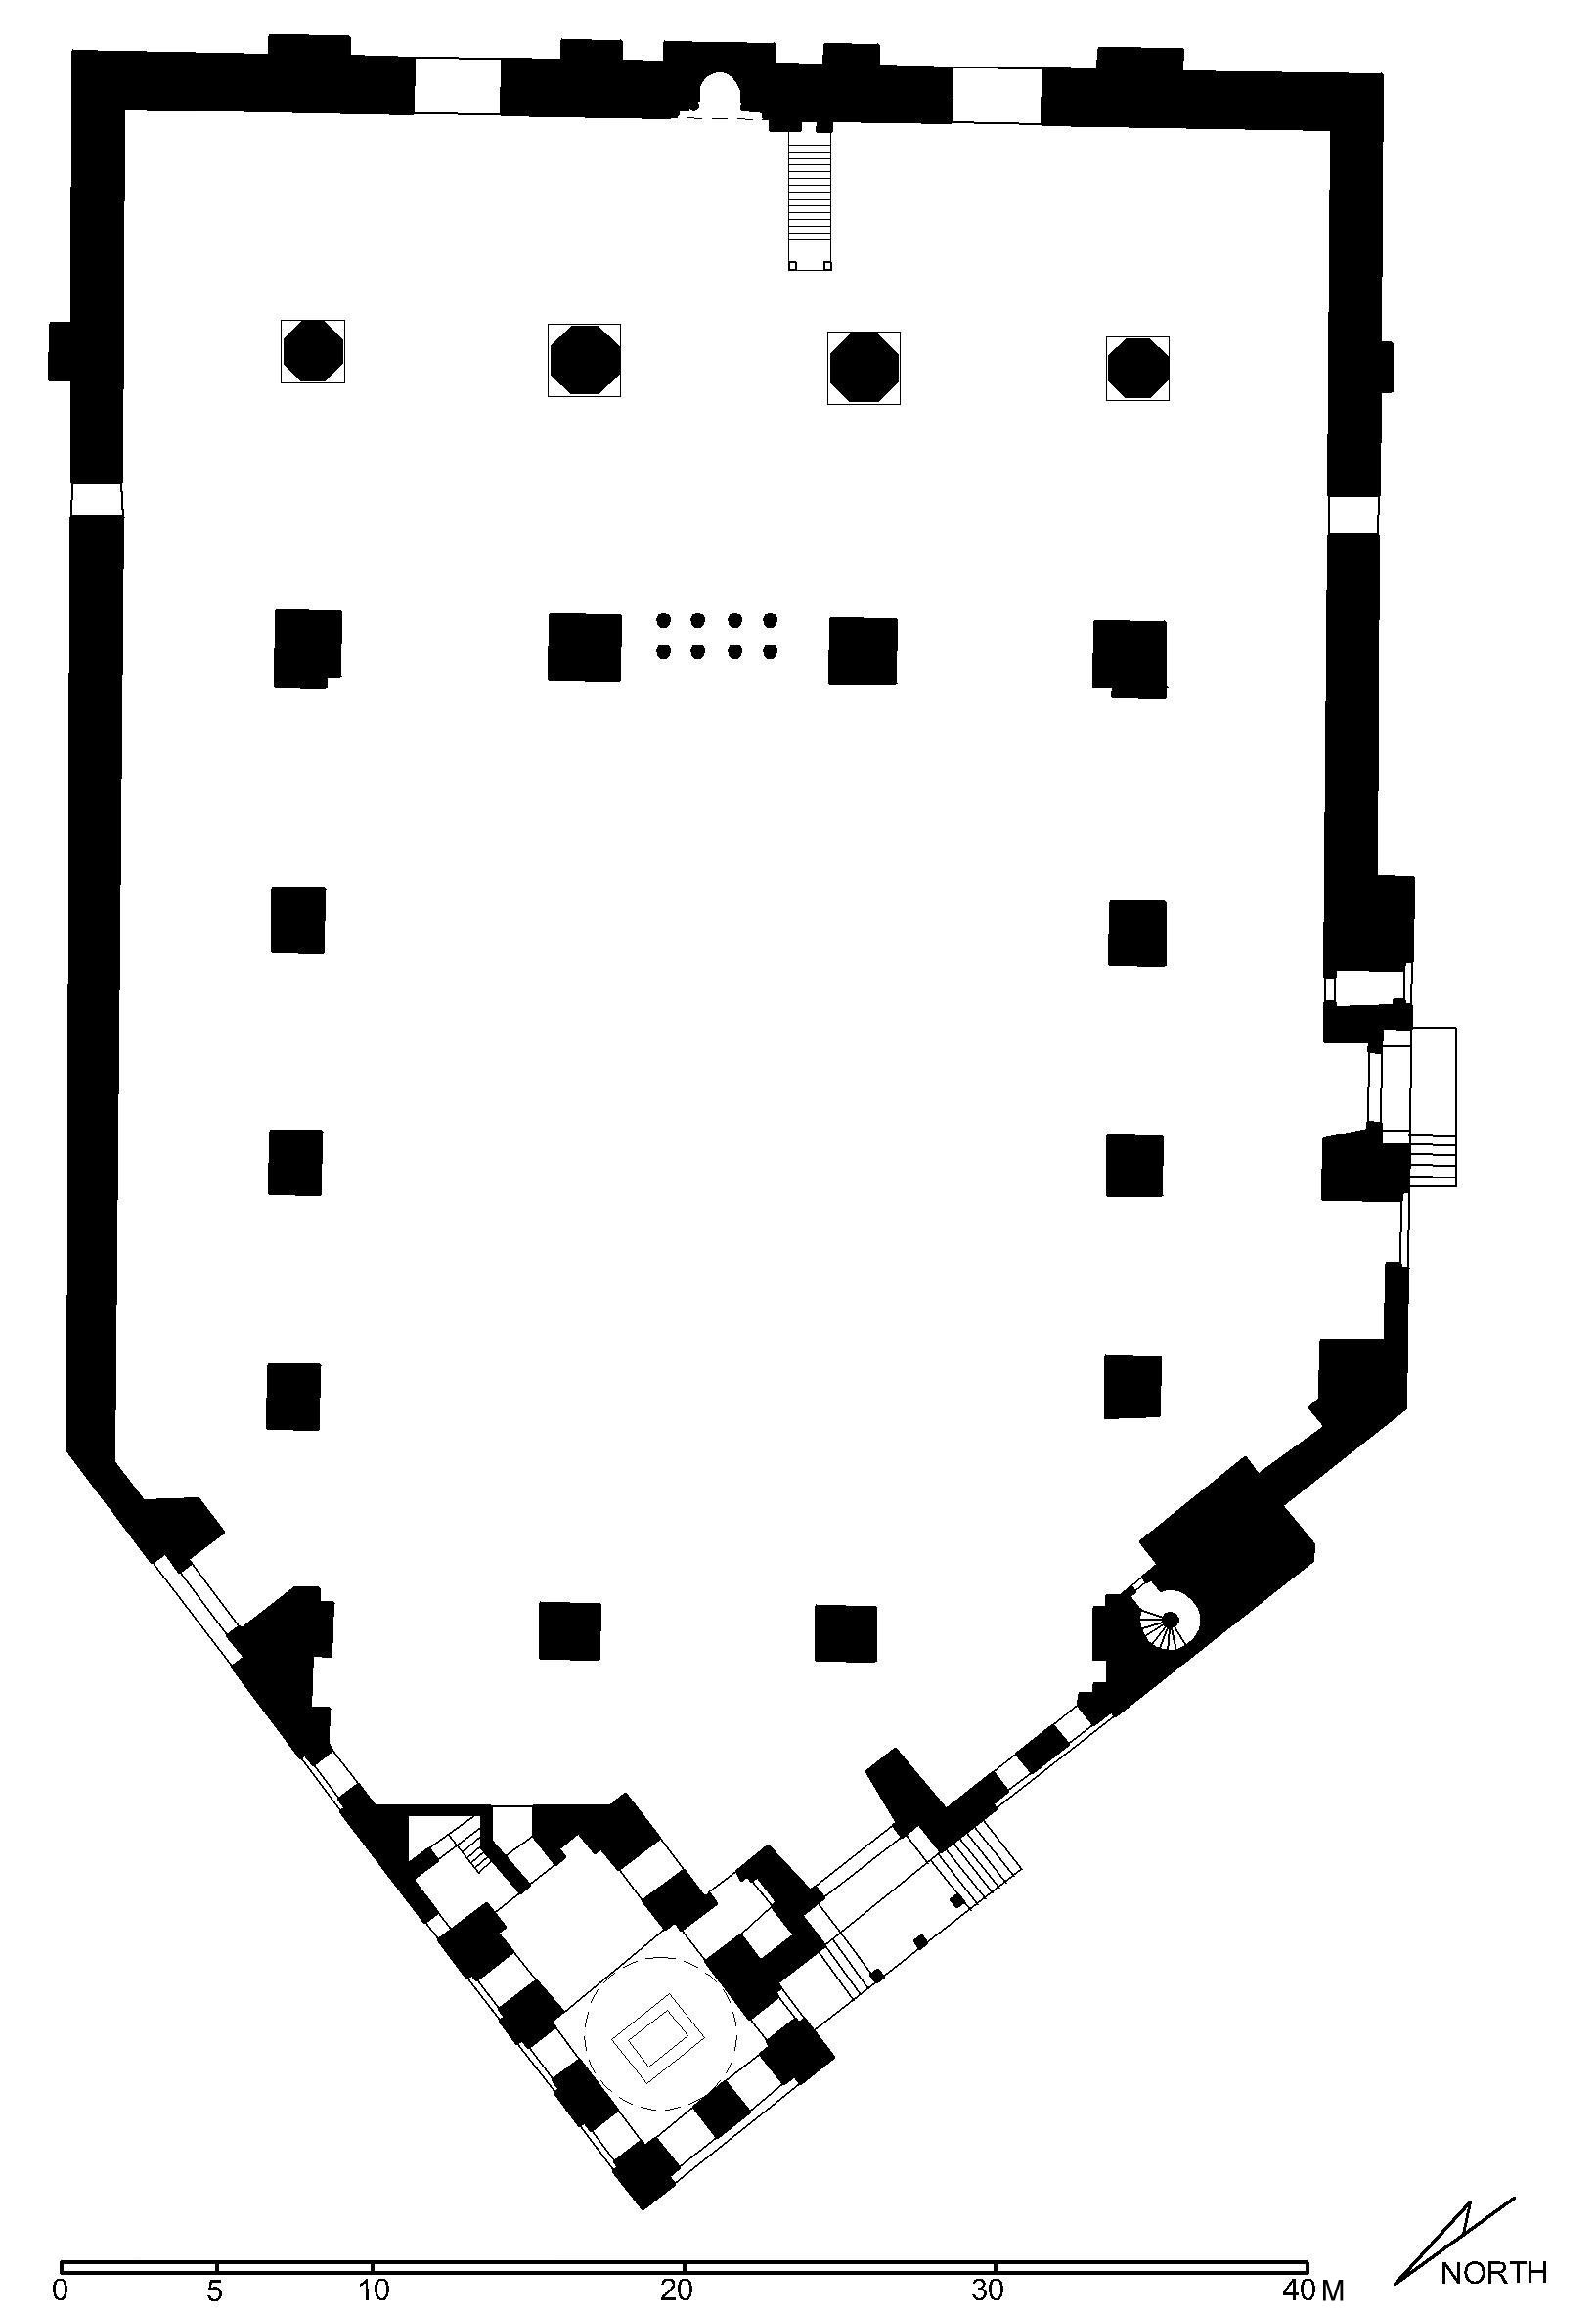 Reconstituted floor plan of Amir Aqsunqur Funerary Complex, Cairo